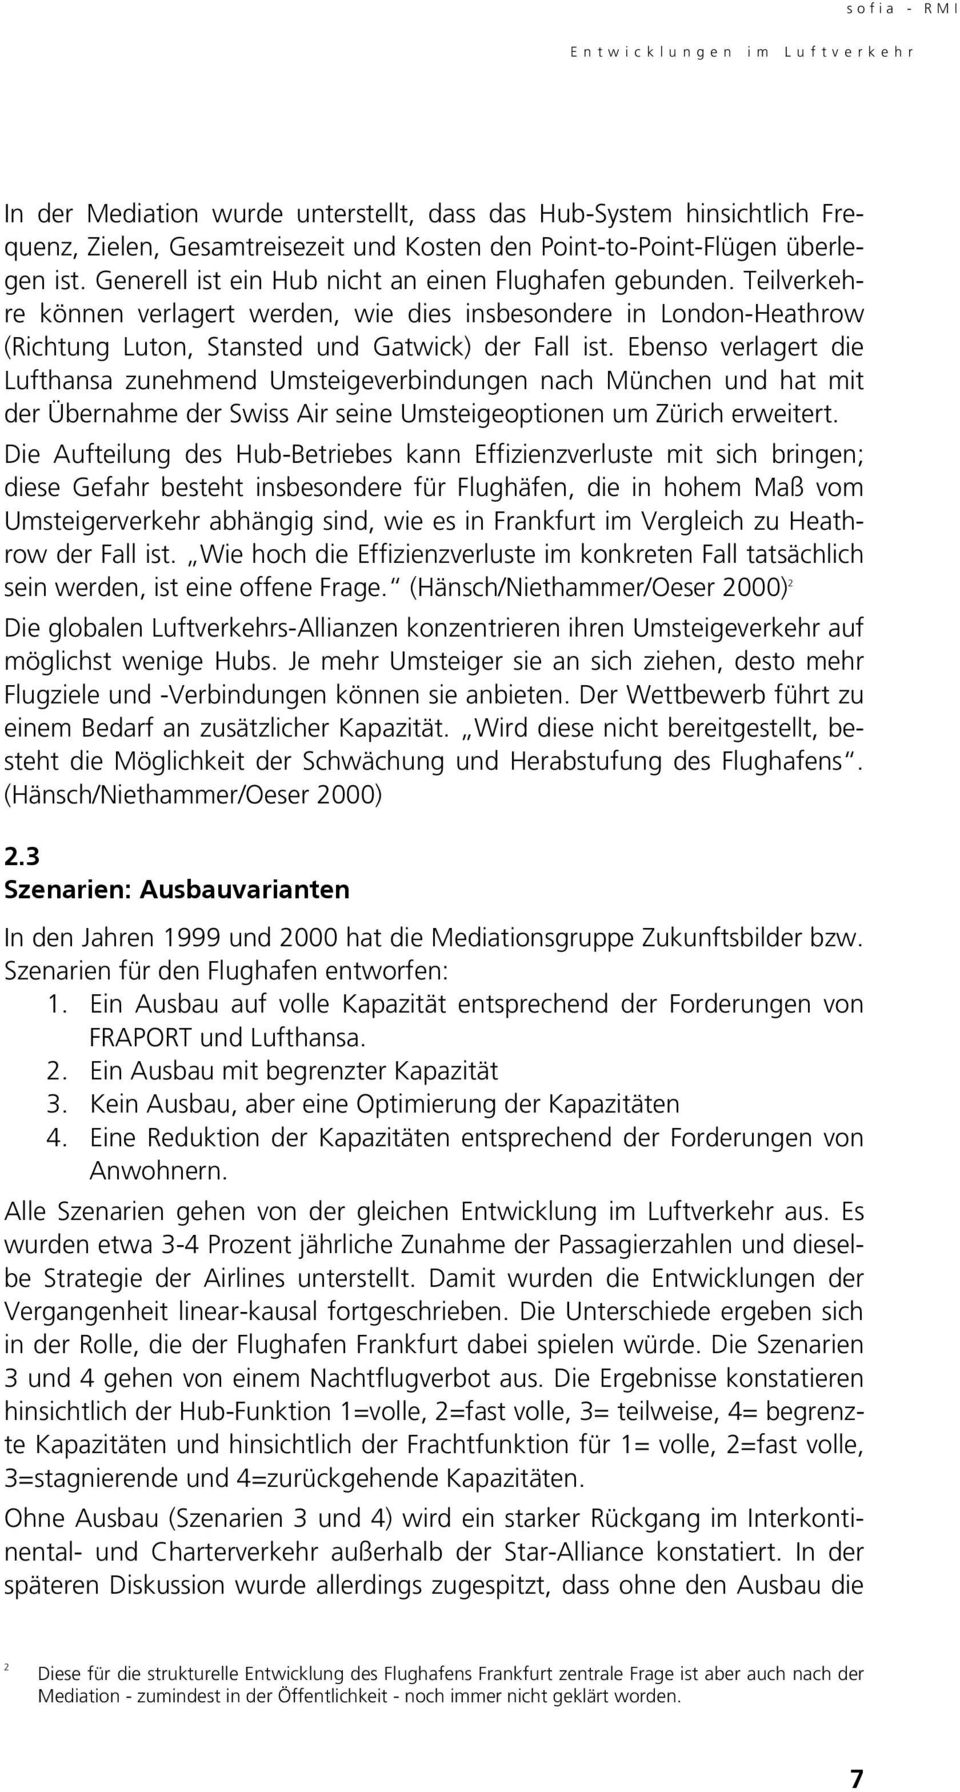 Ebenso verlagert die Lufthansa zunehmend Umsteigeverbindungen nach München und hat mit der Übernahme der Swiss Air seine Umsteigeoptionen um Zürich erweitert.